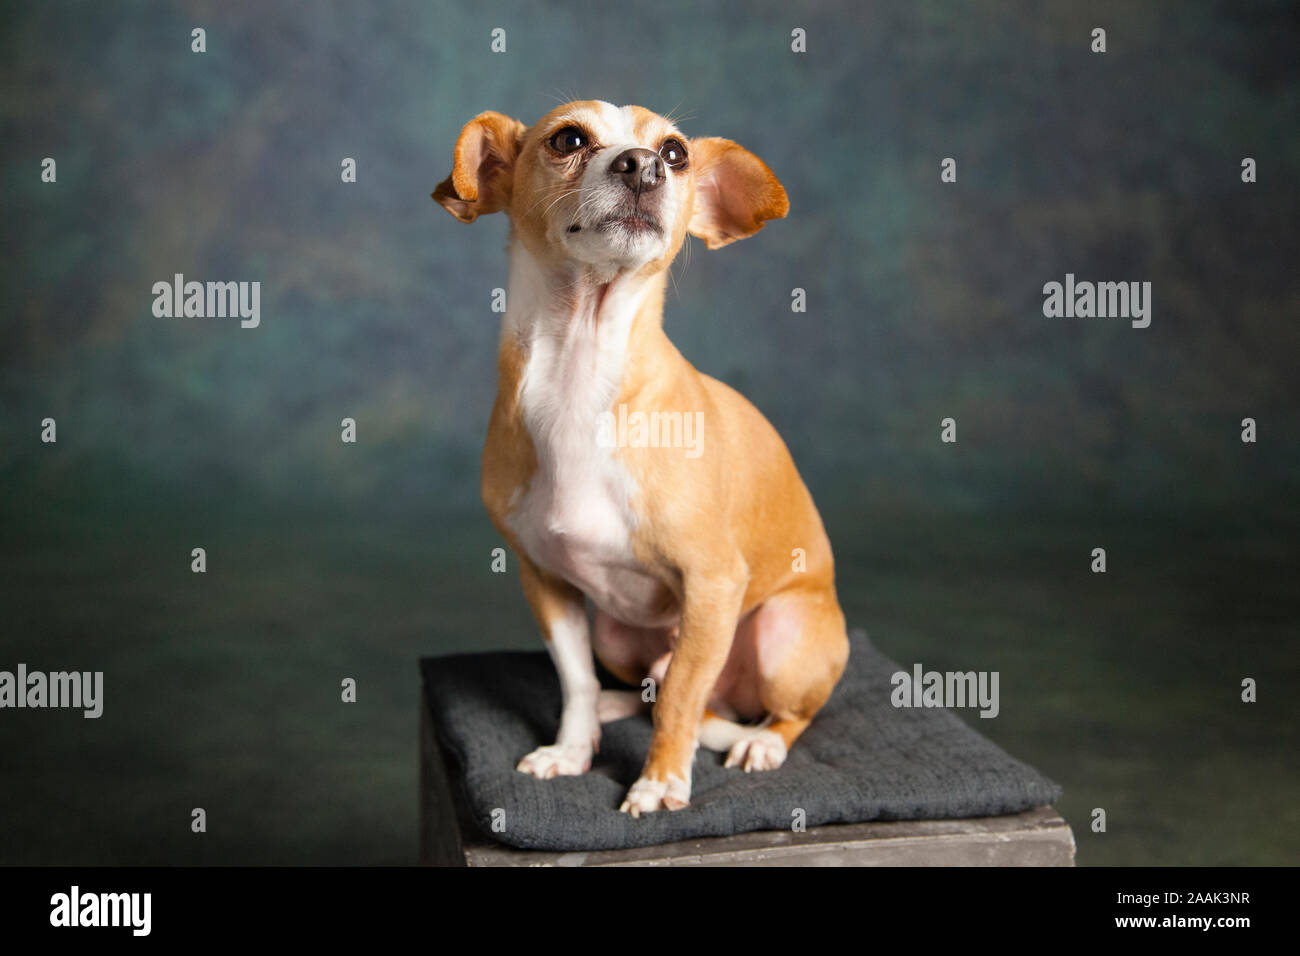 Ritratto in studio di Chihuahua seduto su uno sgabello Foto Stock